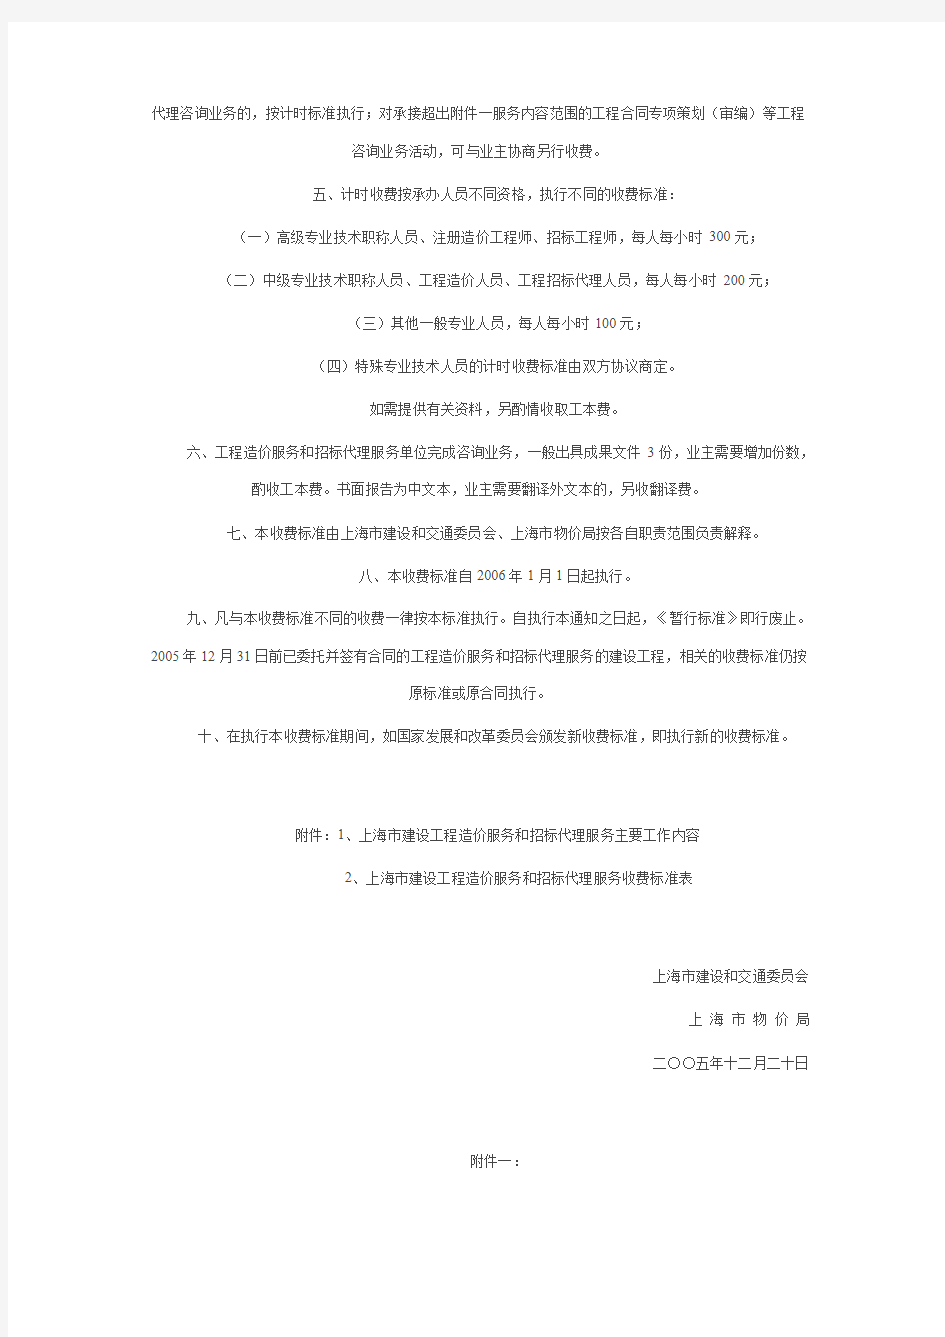 关于发布《上海市建设工程造价服务和工程招标代理服务收费标准》的通知 沪建计联[2005]834号